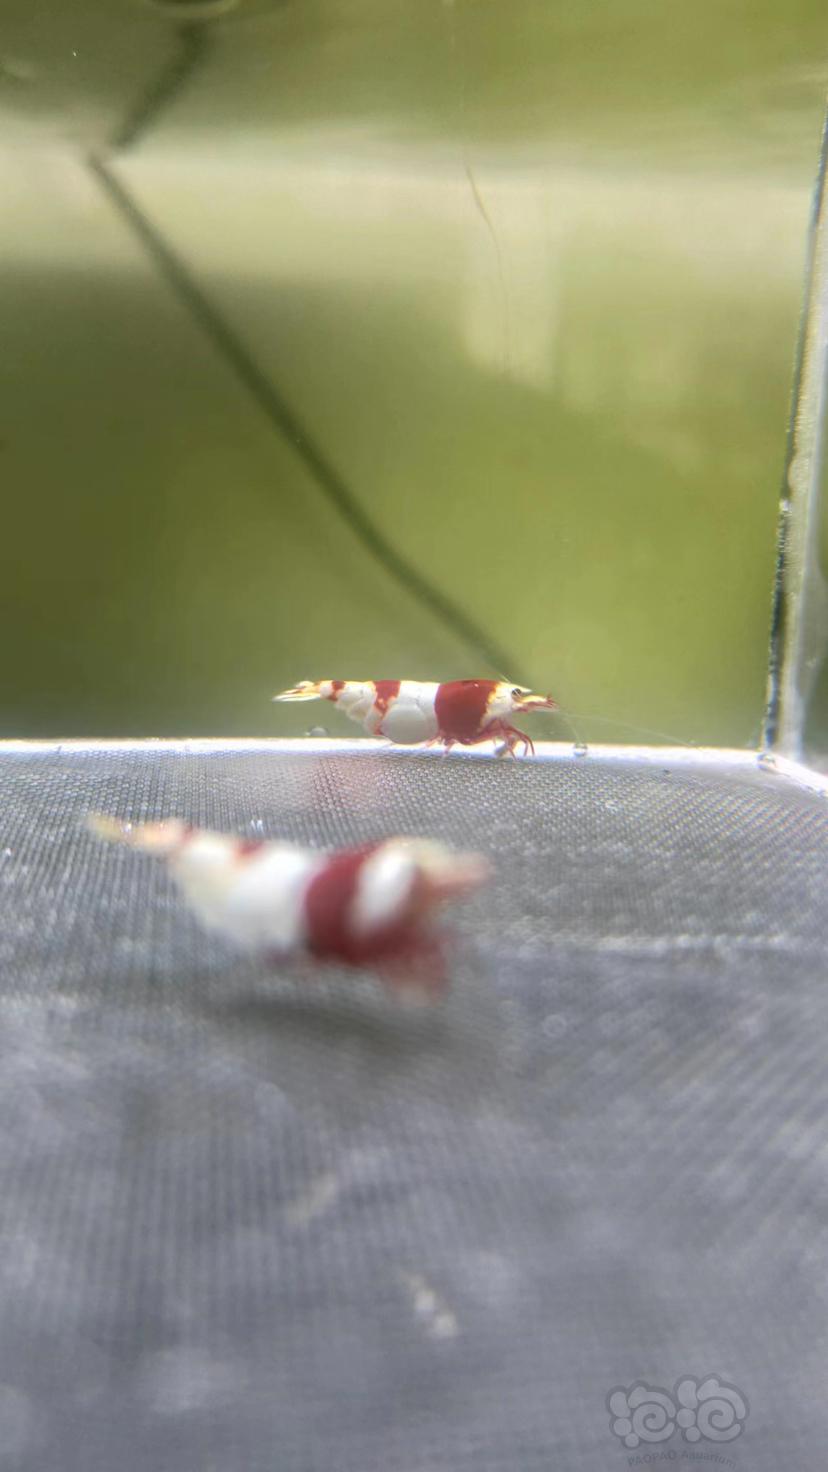 【水晶虾】出苦咖啡血统红白水晶虾-图1